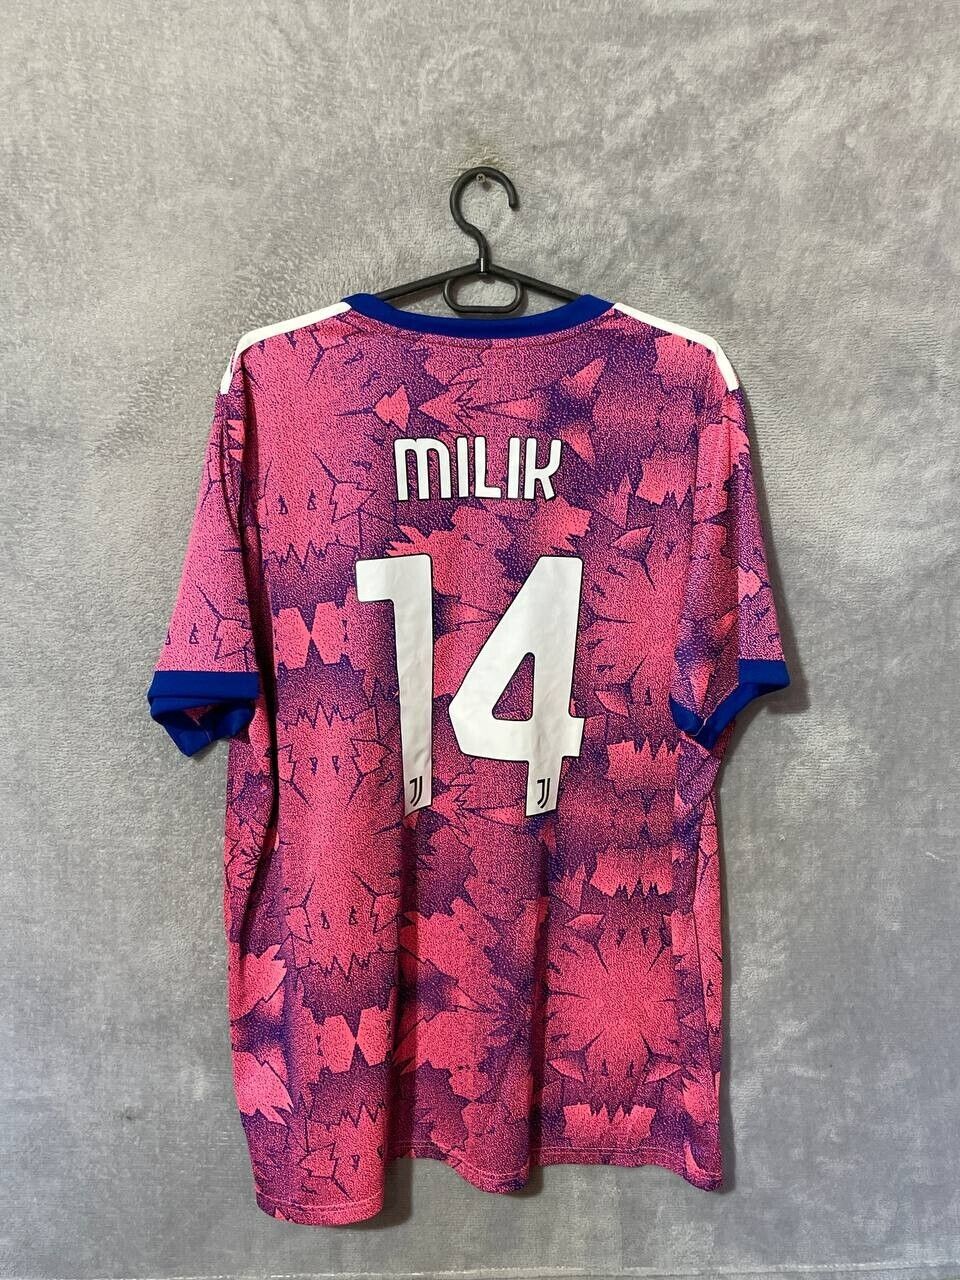 Milik #14 Juventus Jersey Third Football Shirt Pink Adidas Maglia Mens Size 2XL